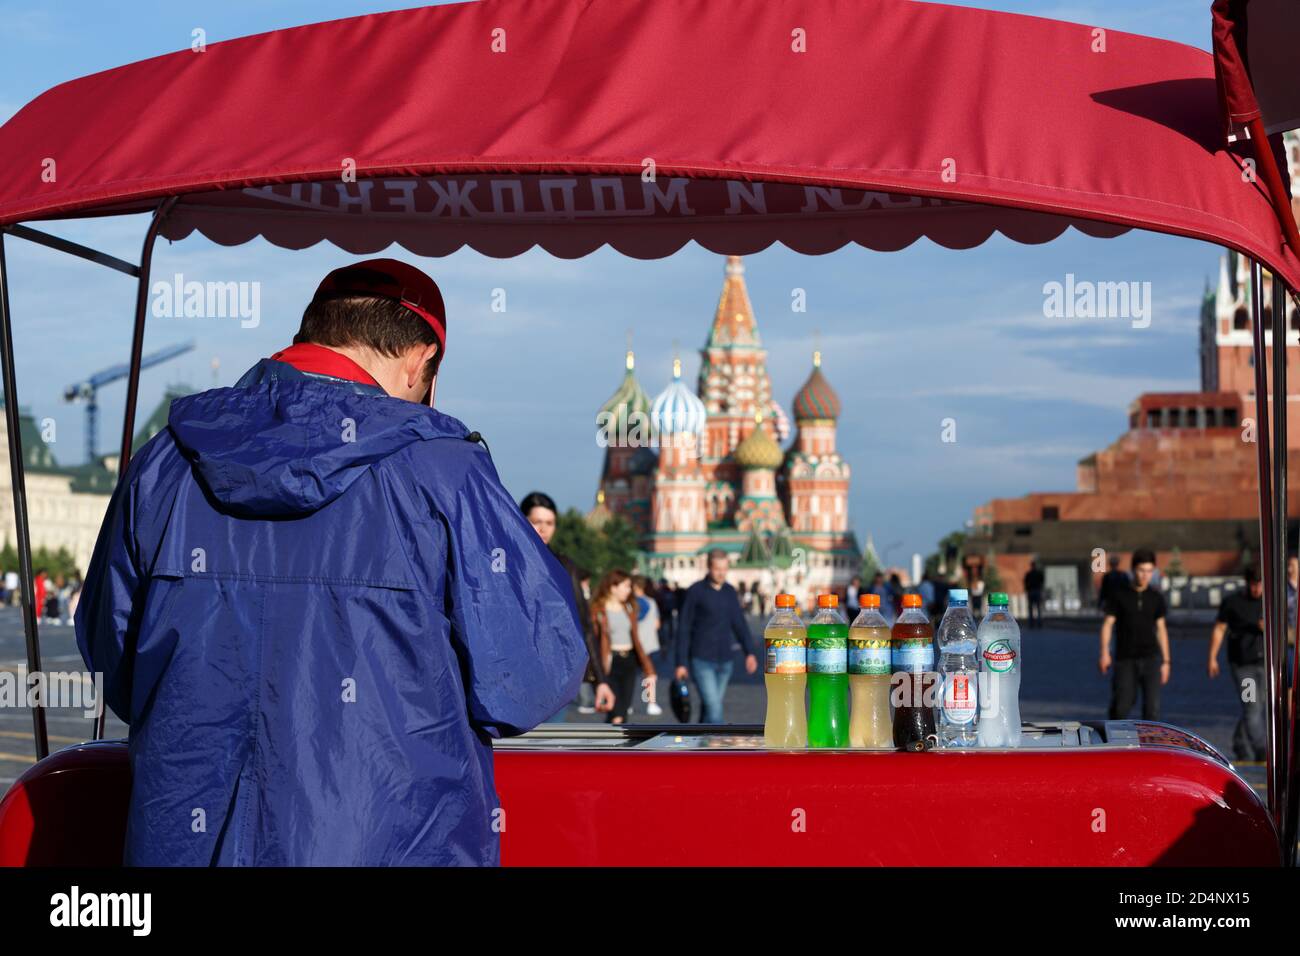 Mosca, Russia, 21 luglio 2020: Un chiosco mobile rosso che vende gelati e bevande si trova sulla piazza rossa che si affaccia sulla Cattedrale di San Basilio. Foto Stock